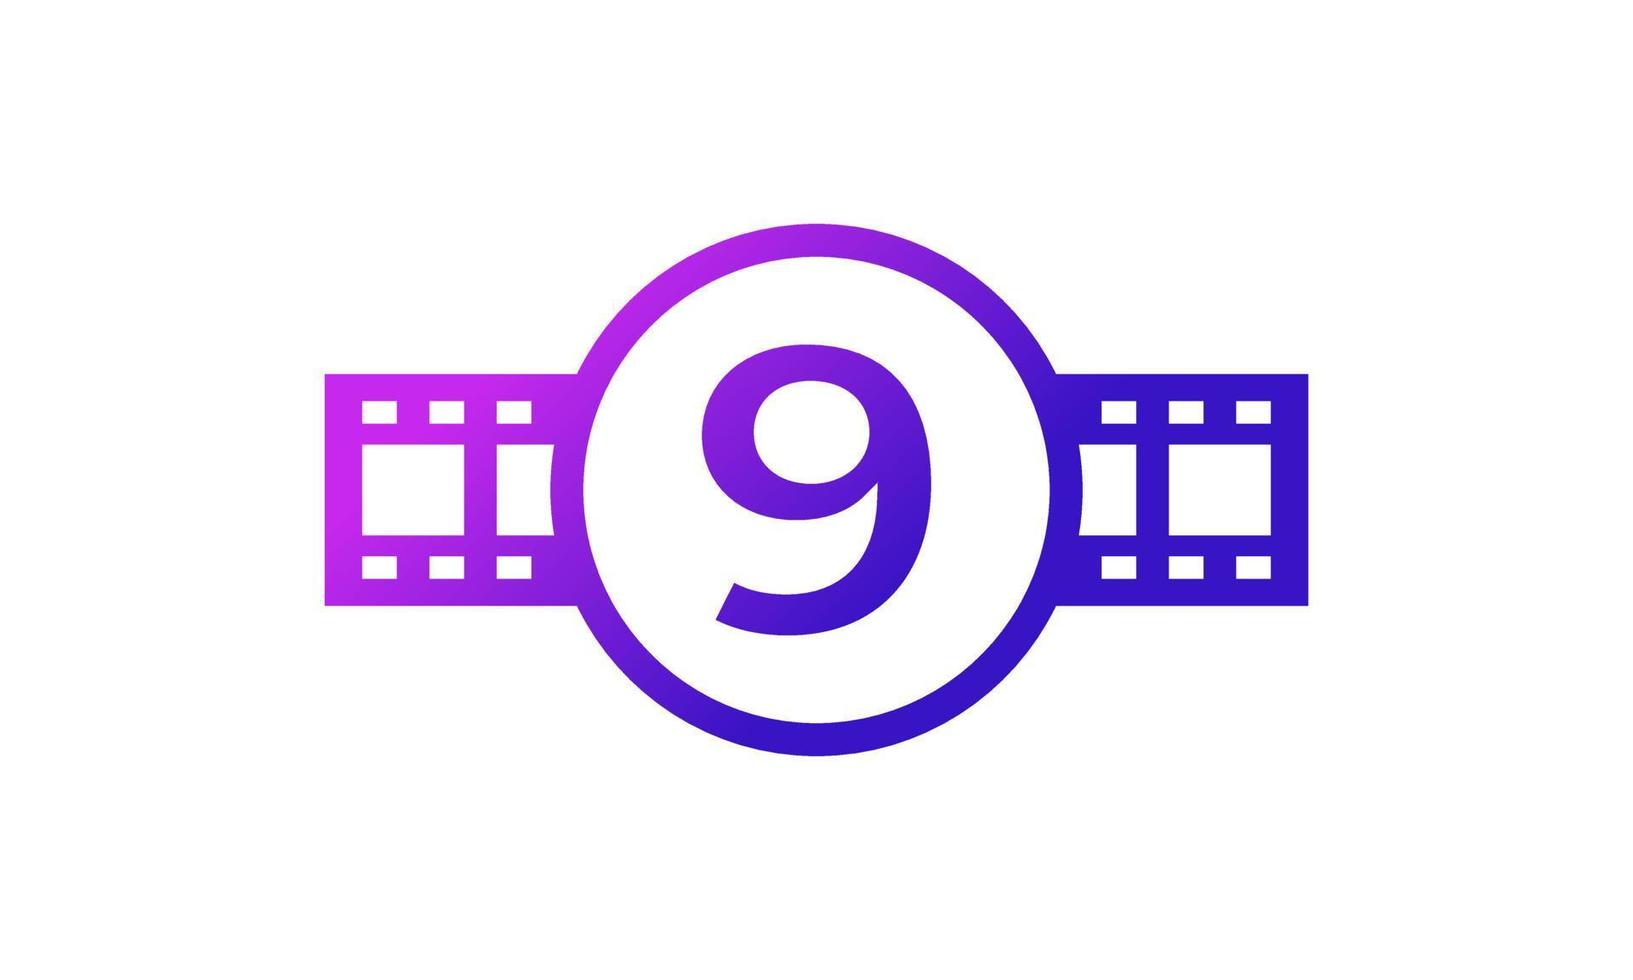 numéro 9 cercle avec bandes de bobine pellicule pour film film cinéma studio de production logo inspiration vecteur